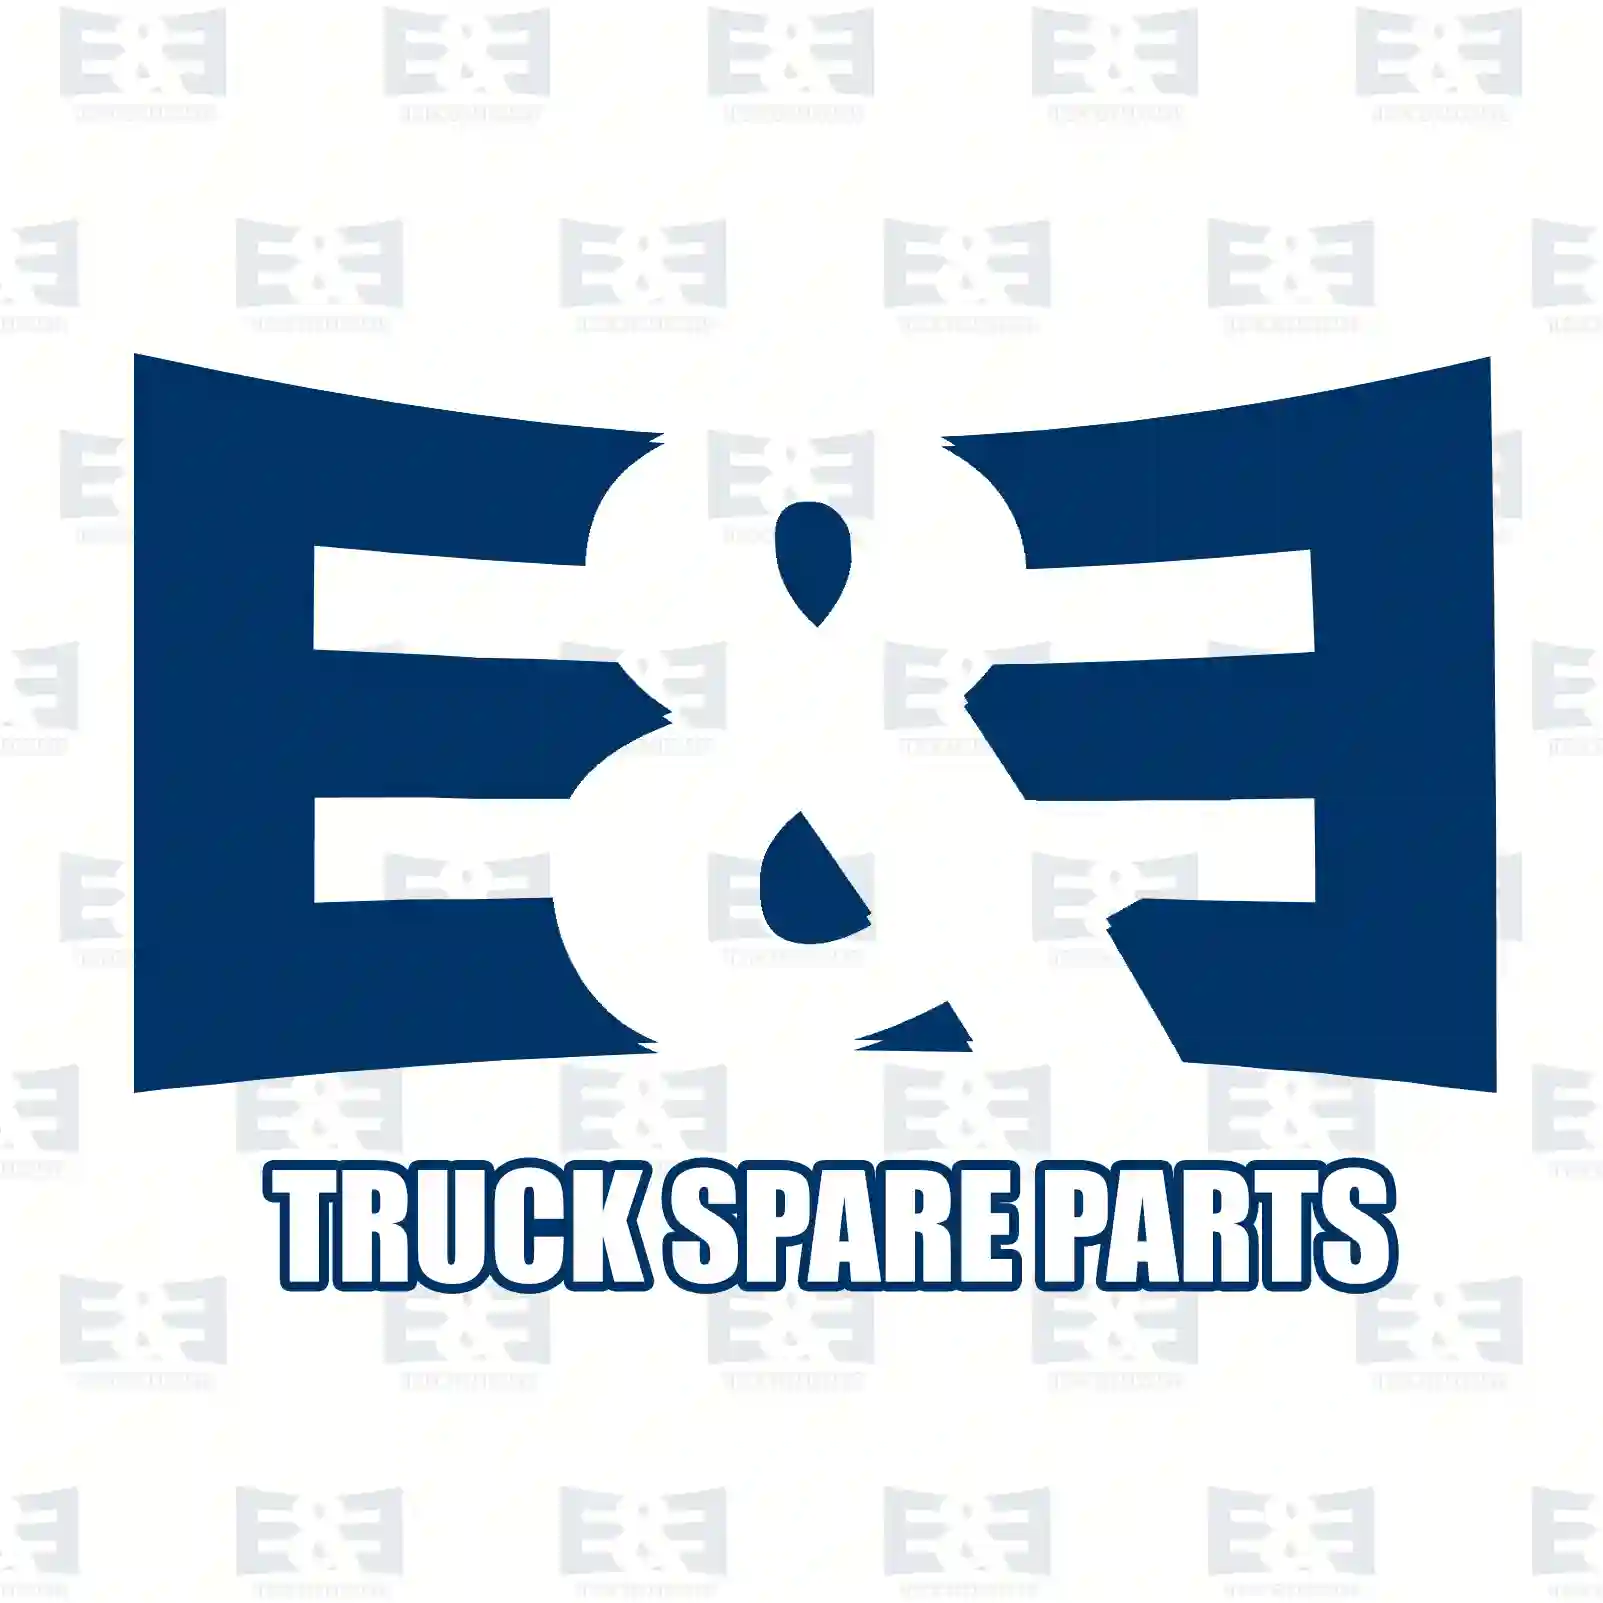 Screw, 2E2283399, 0009906314, 0009996314, 3879900114, , ||  2E2283399 E&E Truck Spare Parts | Truck Spare Parts, Auotomotive Spare Parts Screw, 2E2283399, 0009906314, 0009996314, 3879900114, , ||  2E2283399 E&E Truck Spare Parts | Truck Spare Parts, Auotomotive Spare Parts